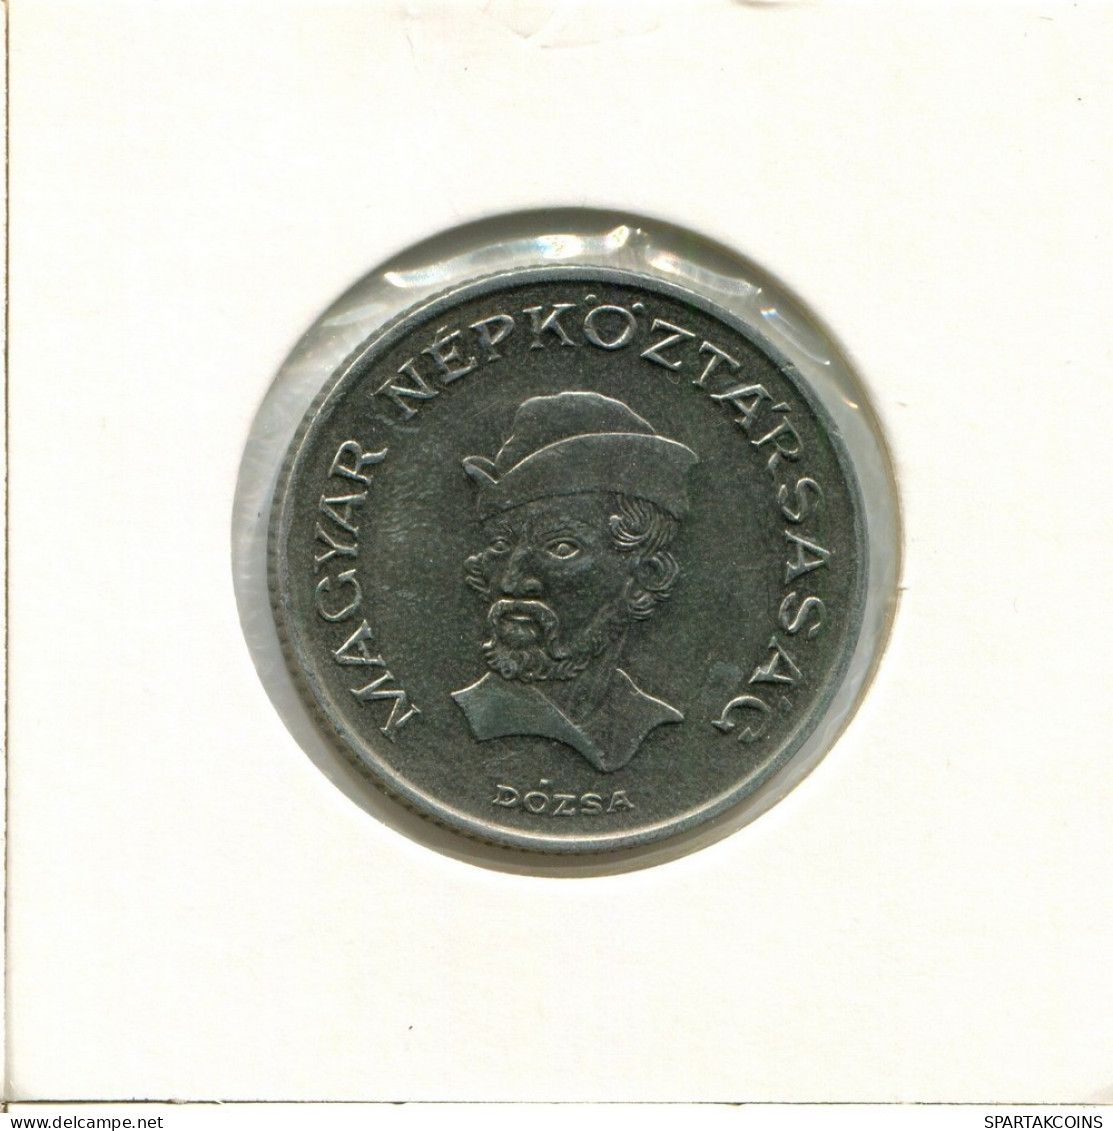 20 FORINT 1986 HUNGRÍA HUNGARY Moneda #AY532.E.A - Ungheria